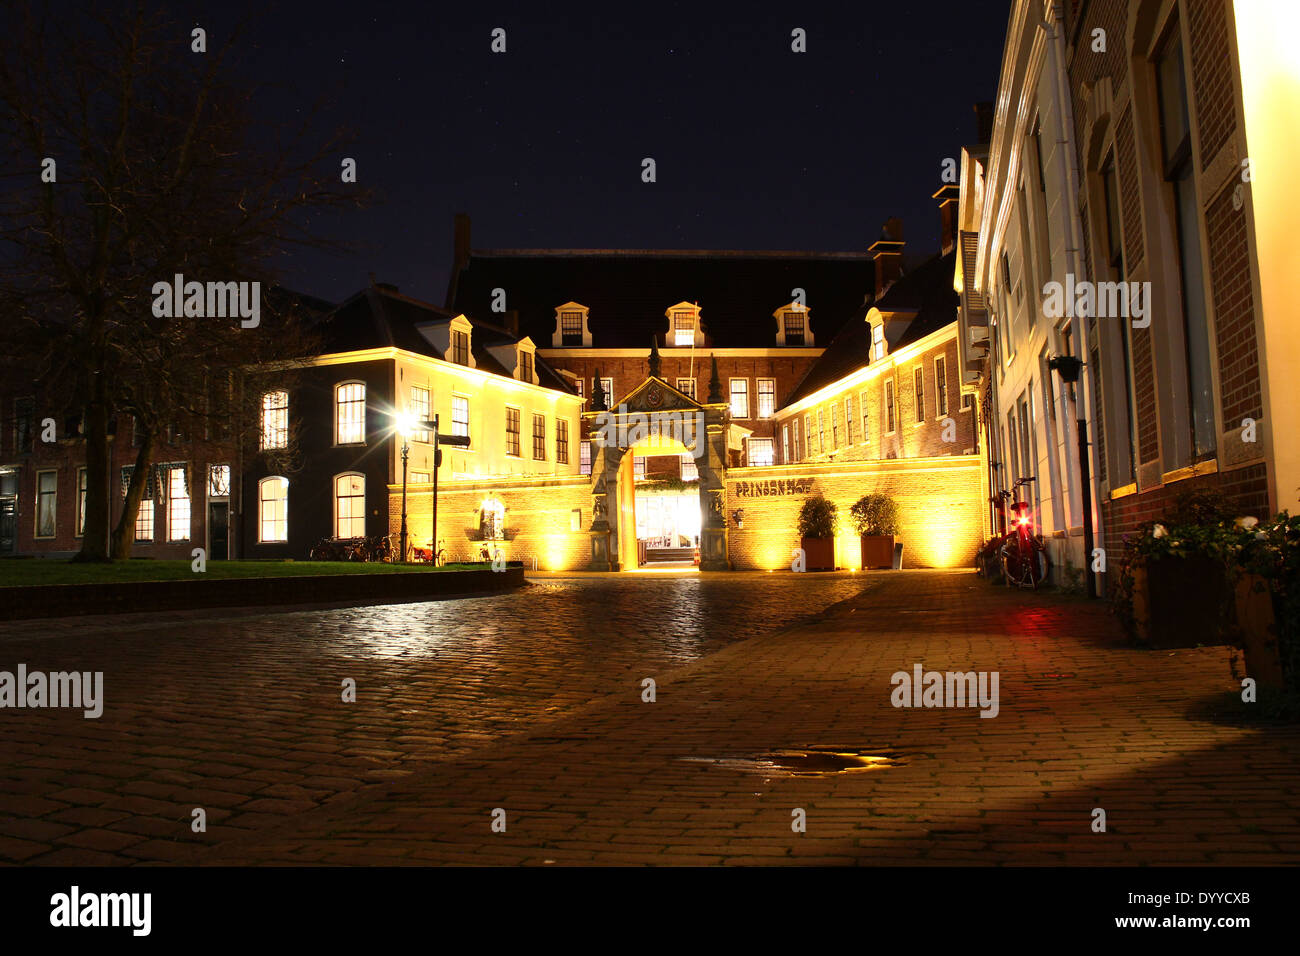 Martinikerhof in der alten mittelalterlichen Zentrum Groningen, Niederlande, mit Prinsenhof Hotel bei Nacht Stockfoto